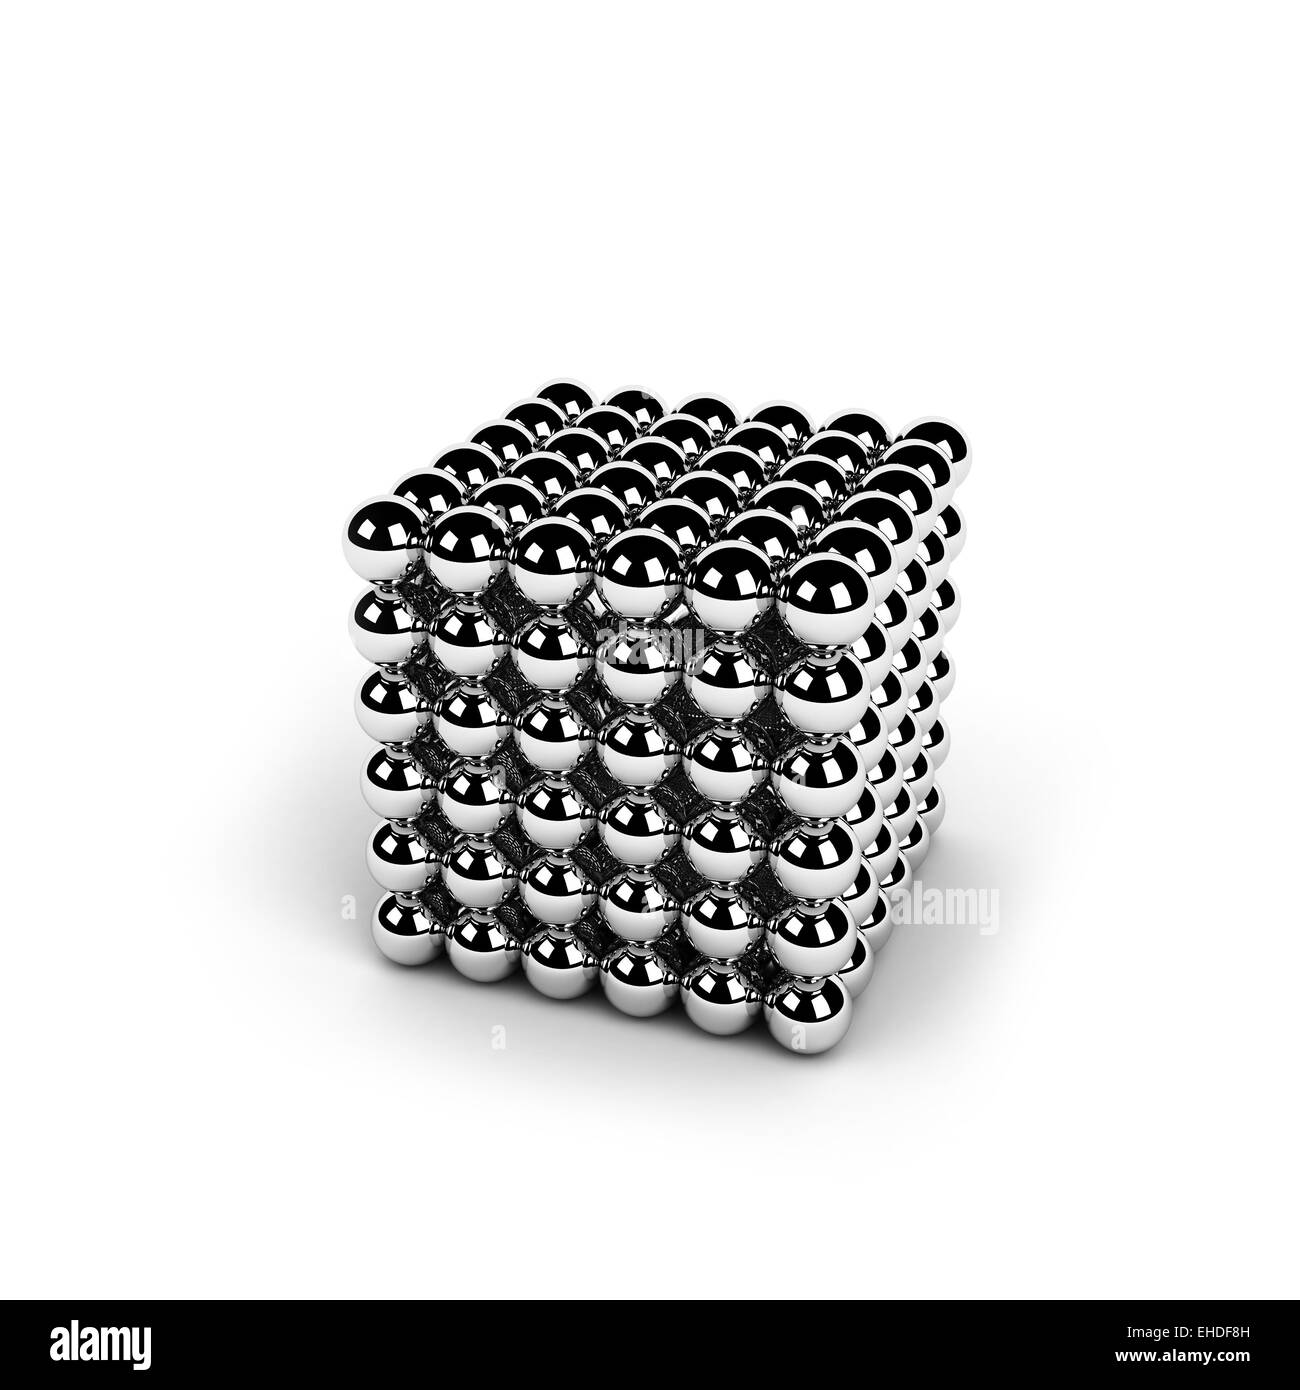 Neocube -Fotos und -Bildmaterial in hoher Auflösung – Alamy